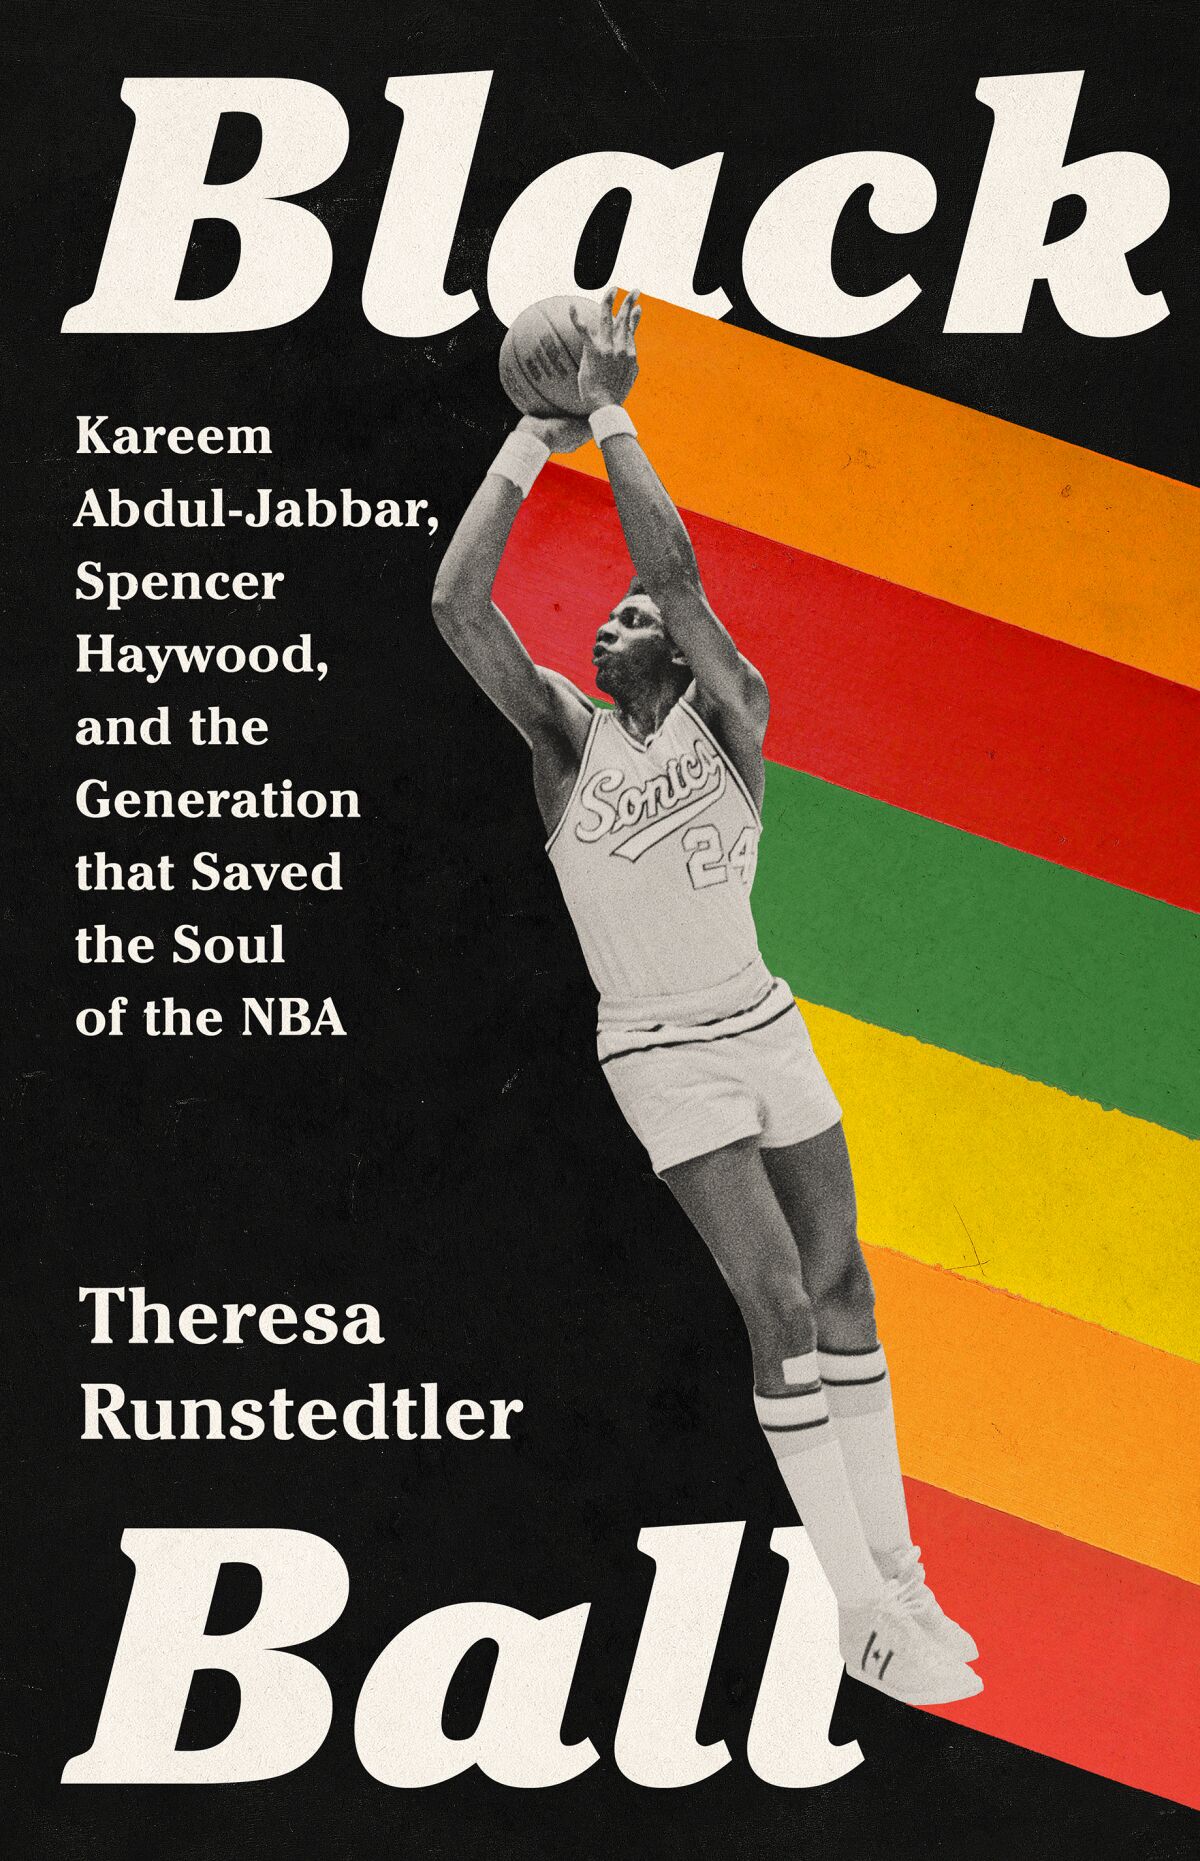 "Black Ball" Author: Theresa Runstedler